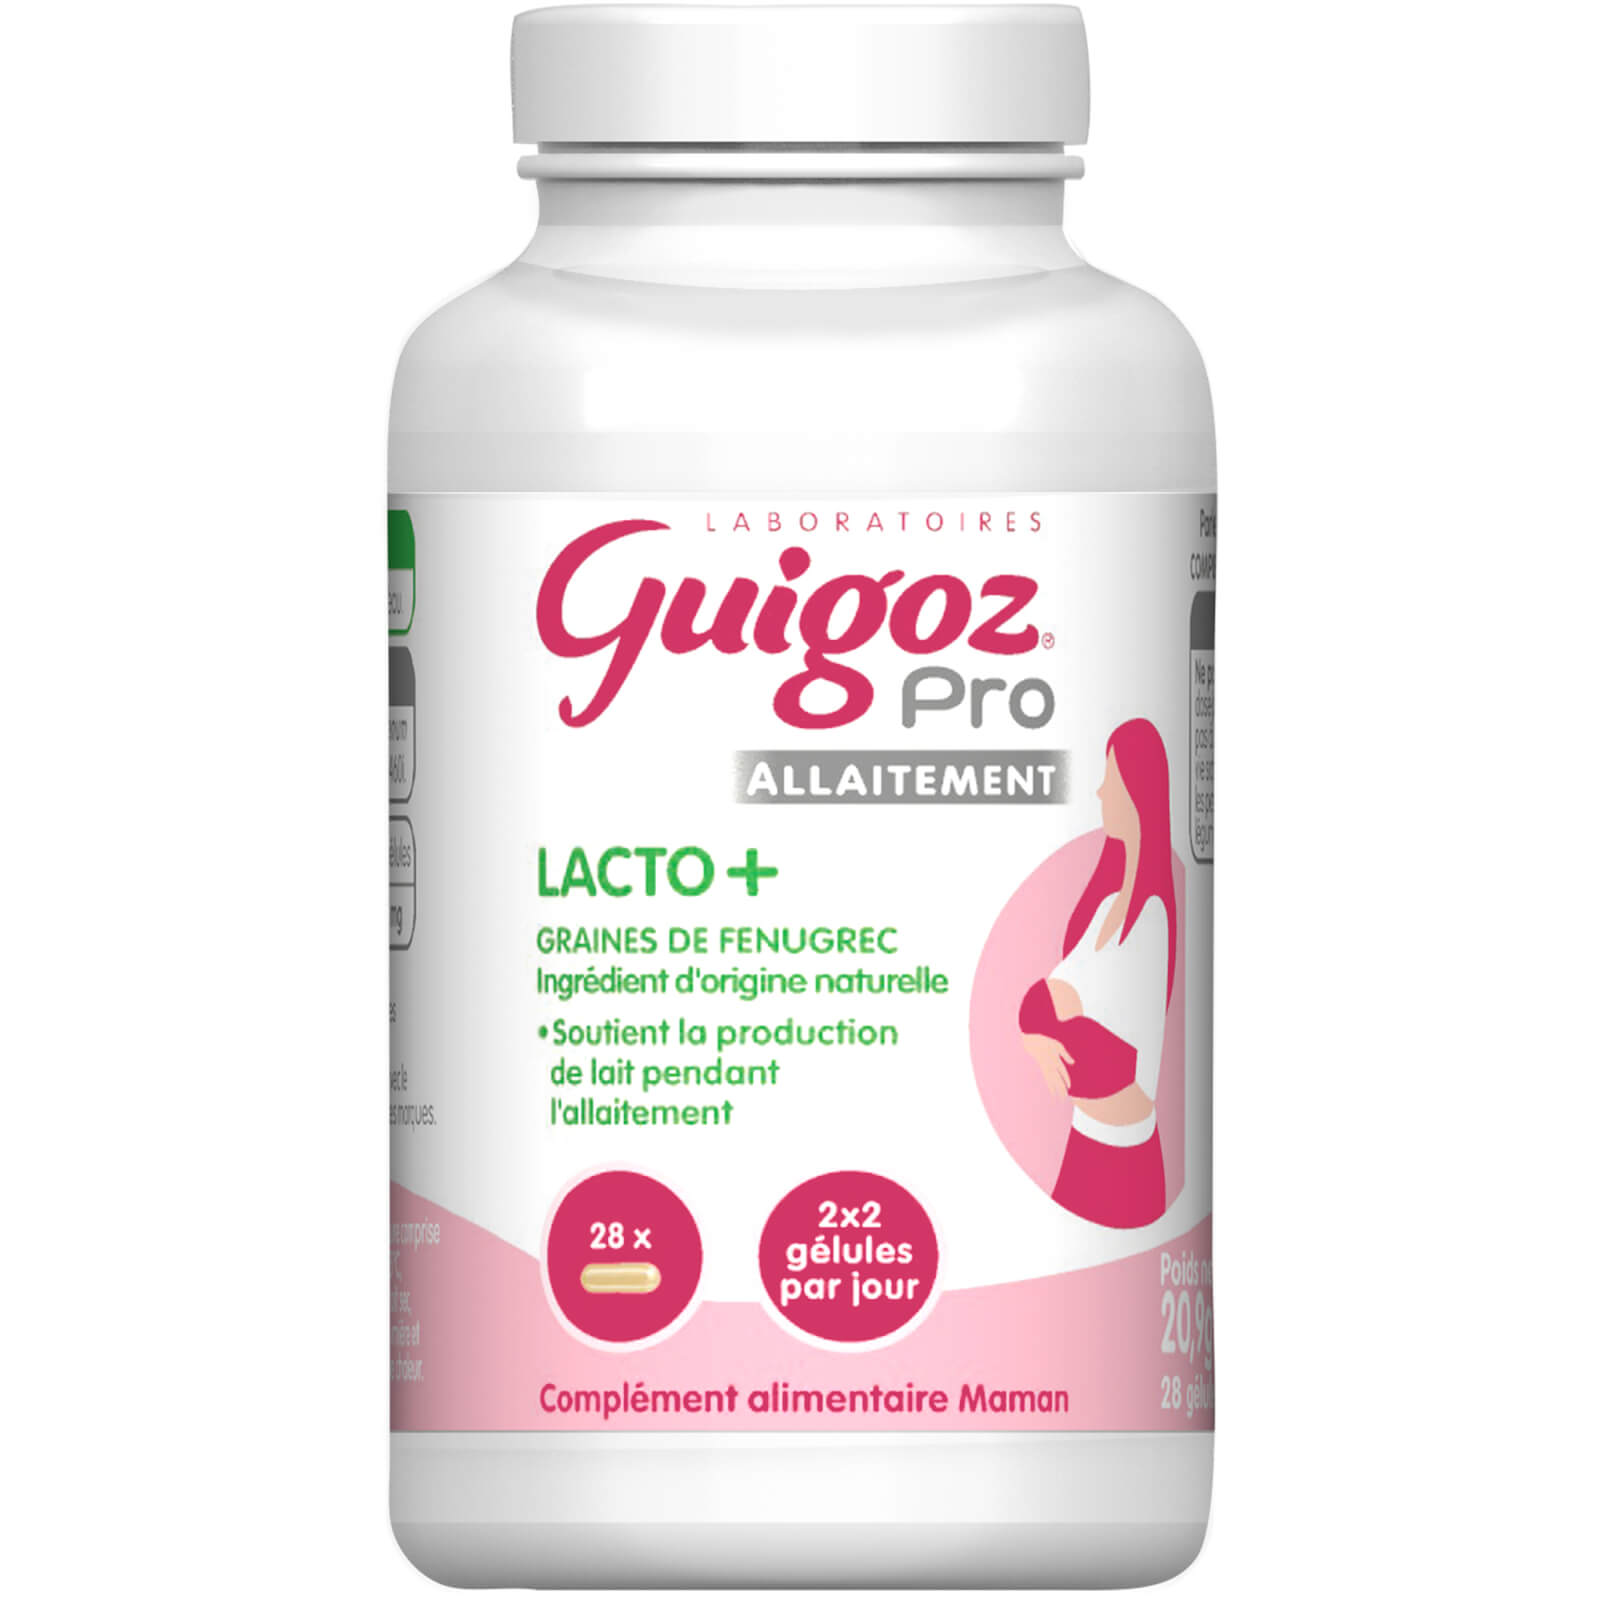 Guigoz® Pro Allaitement Lacto + x28 gélules